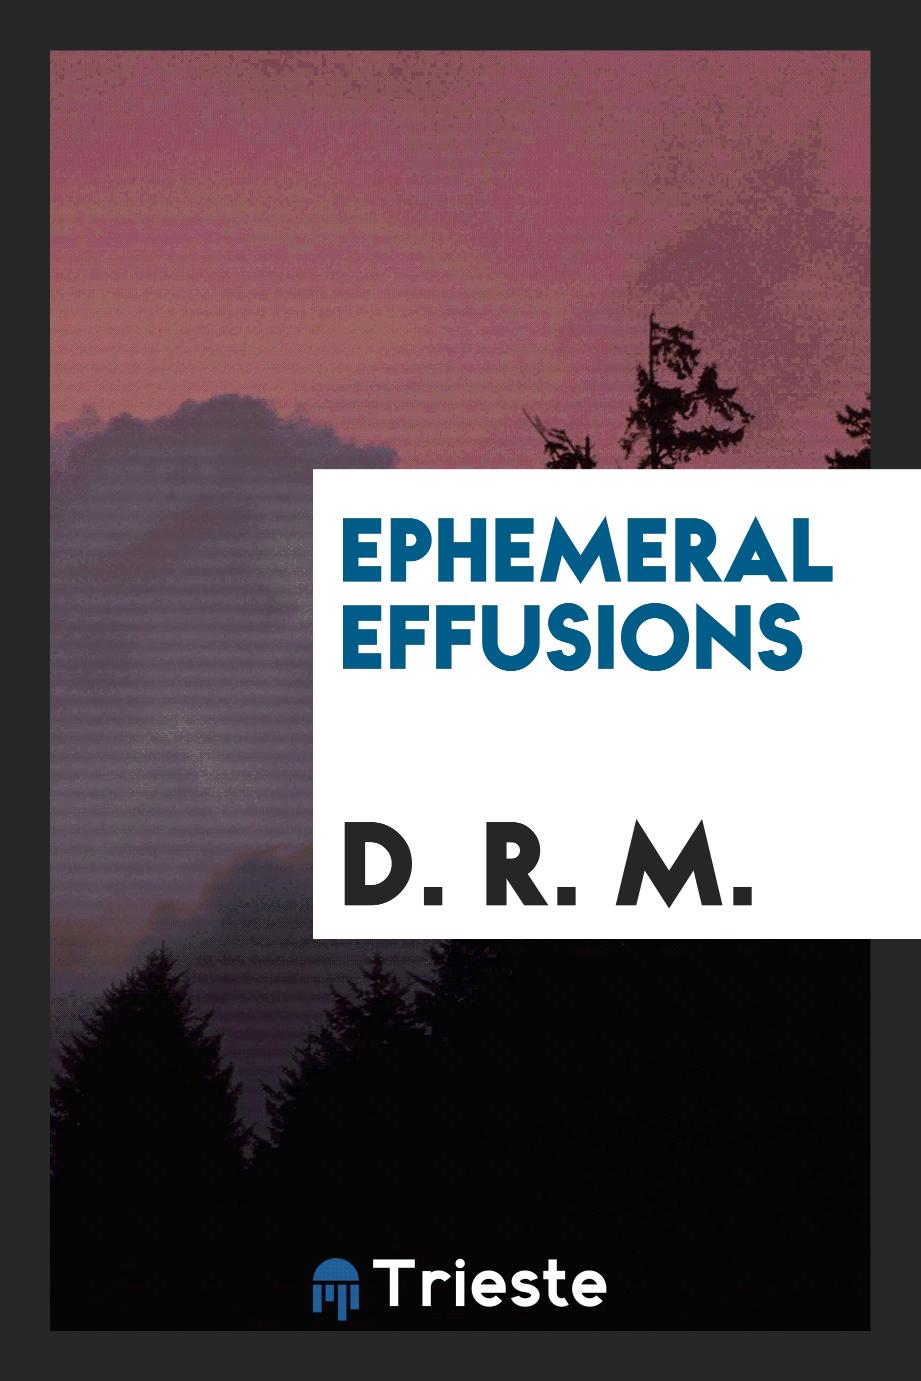 Ephemeral effusions